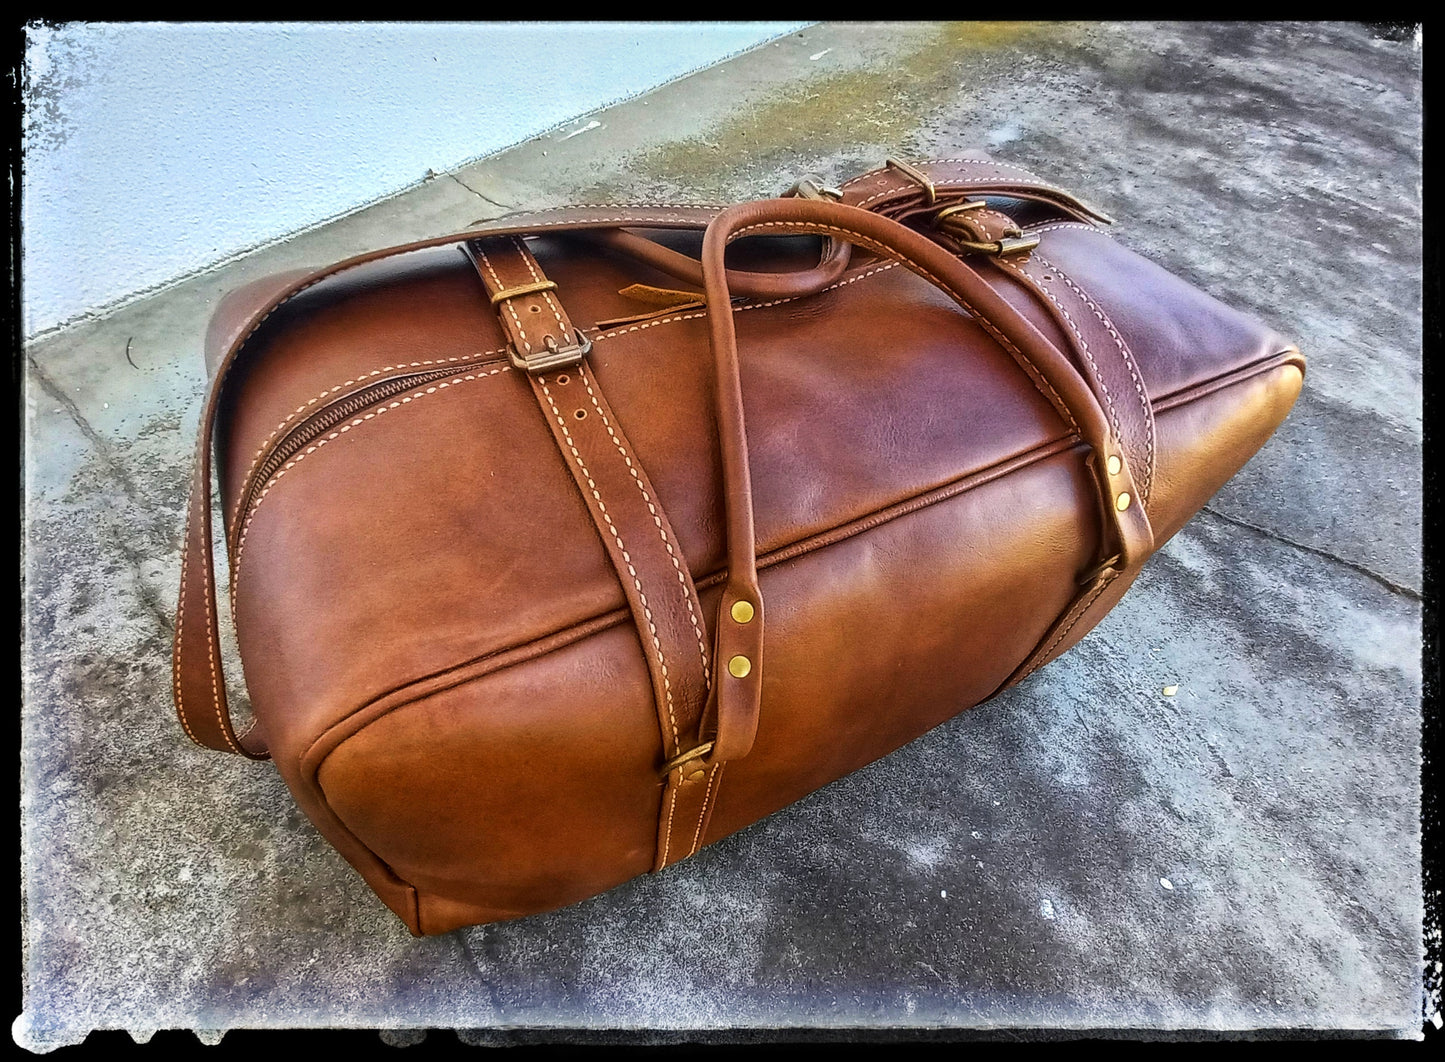 The William Travel Bag